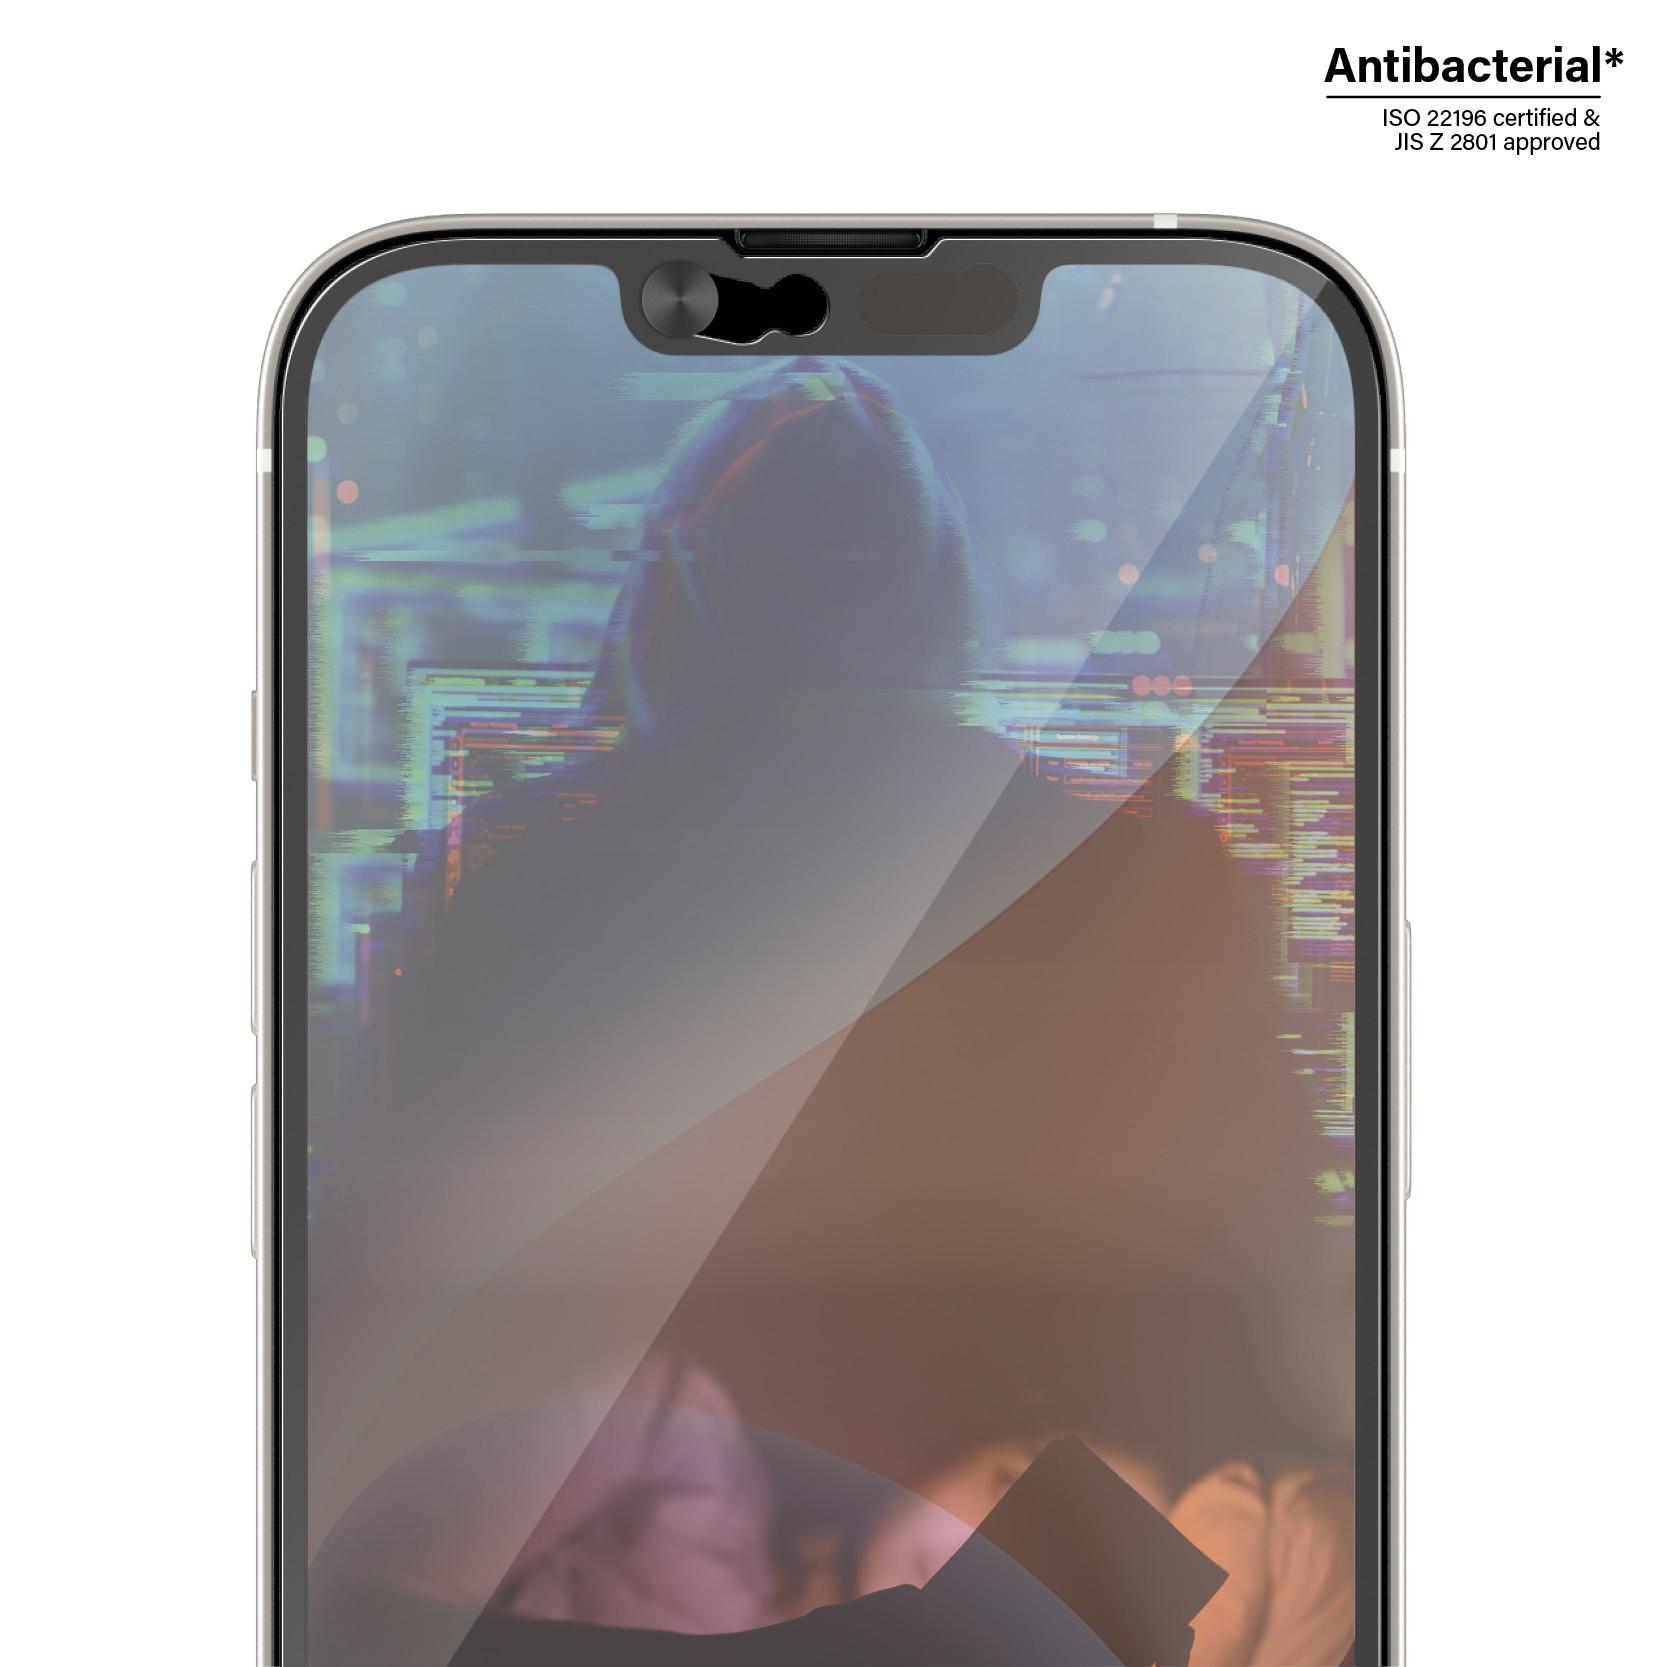 PanzerGlass  2795 écran et protection arrière de téléphones portables Protection d'écran transparent Apple 1 pièce(s) 